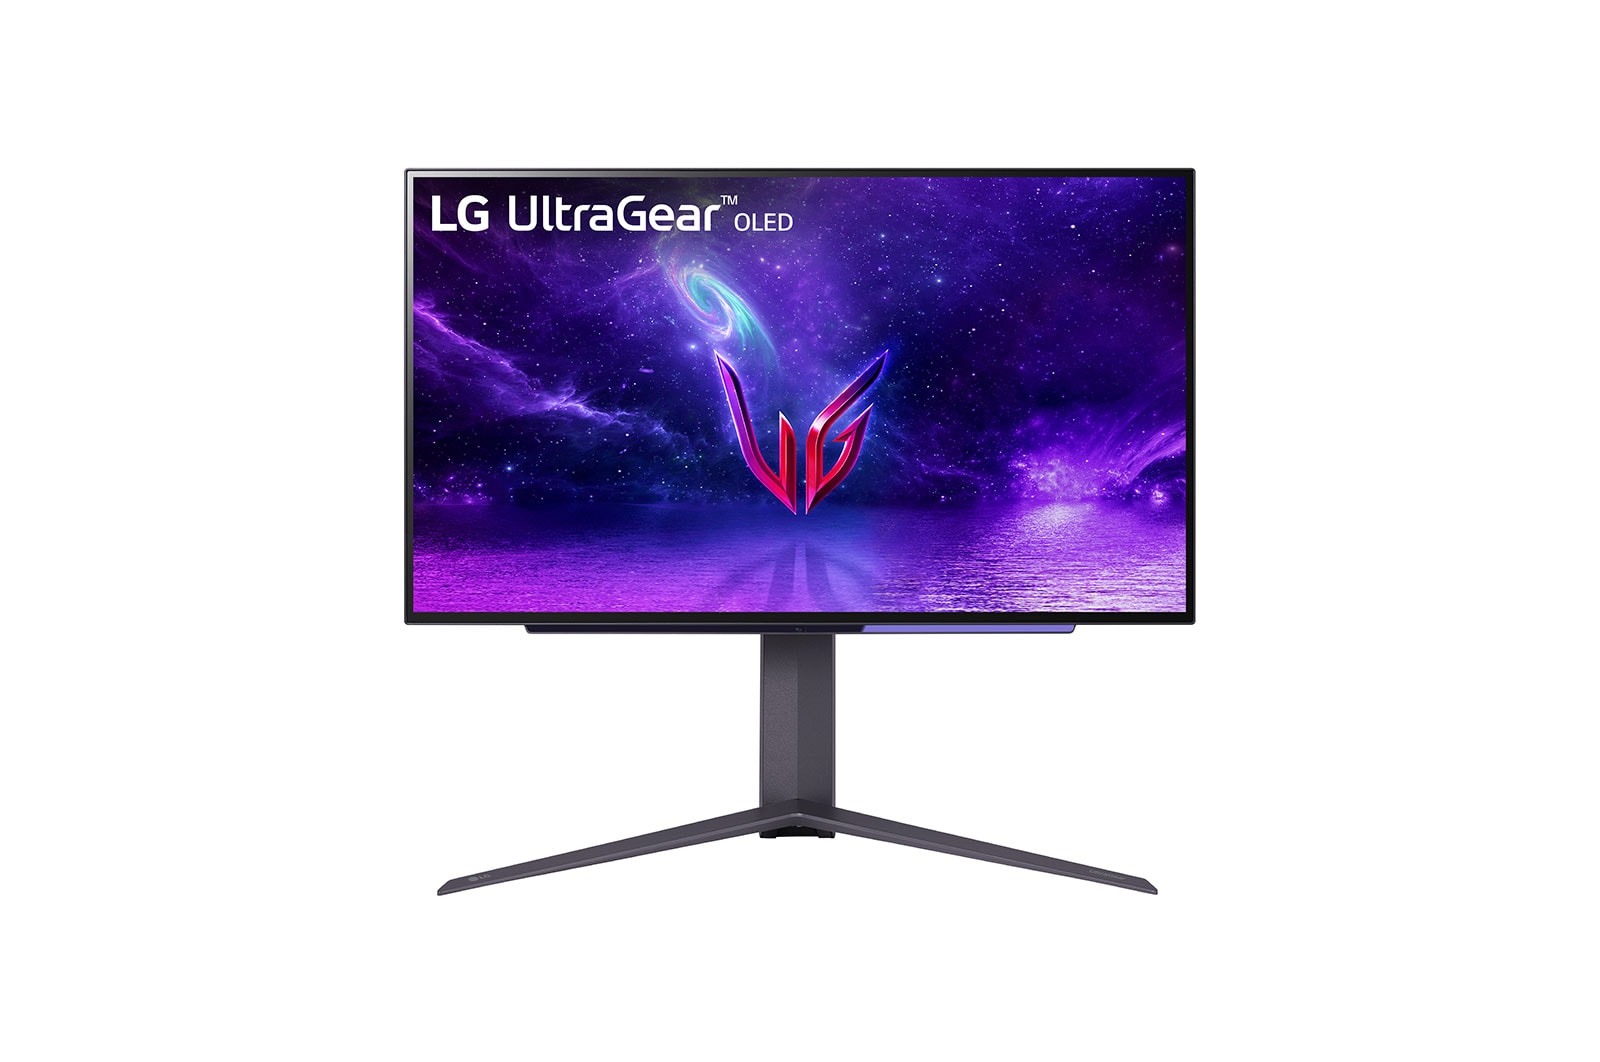 LG UltraGear OLED – monitor dla graczy ze znakomitym odświeżaniem obrazu w 240 Hz